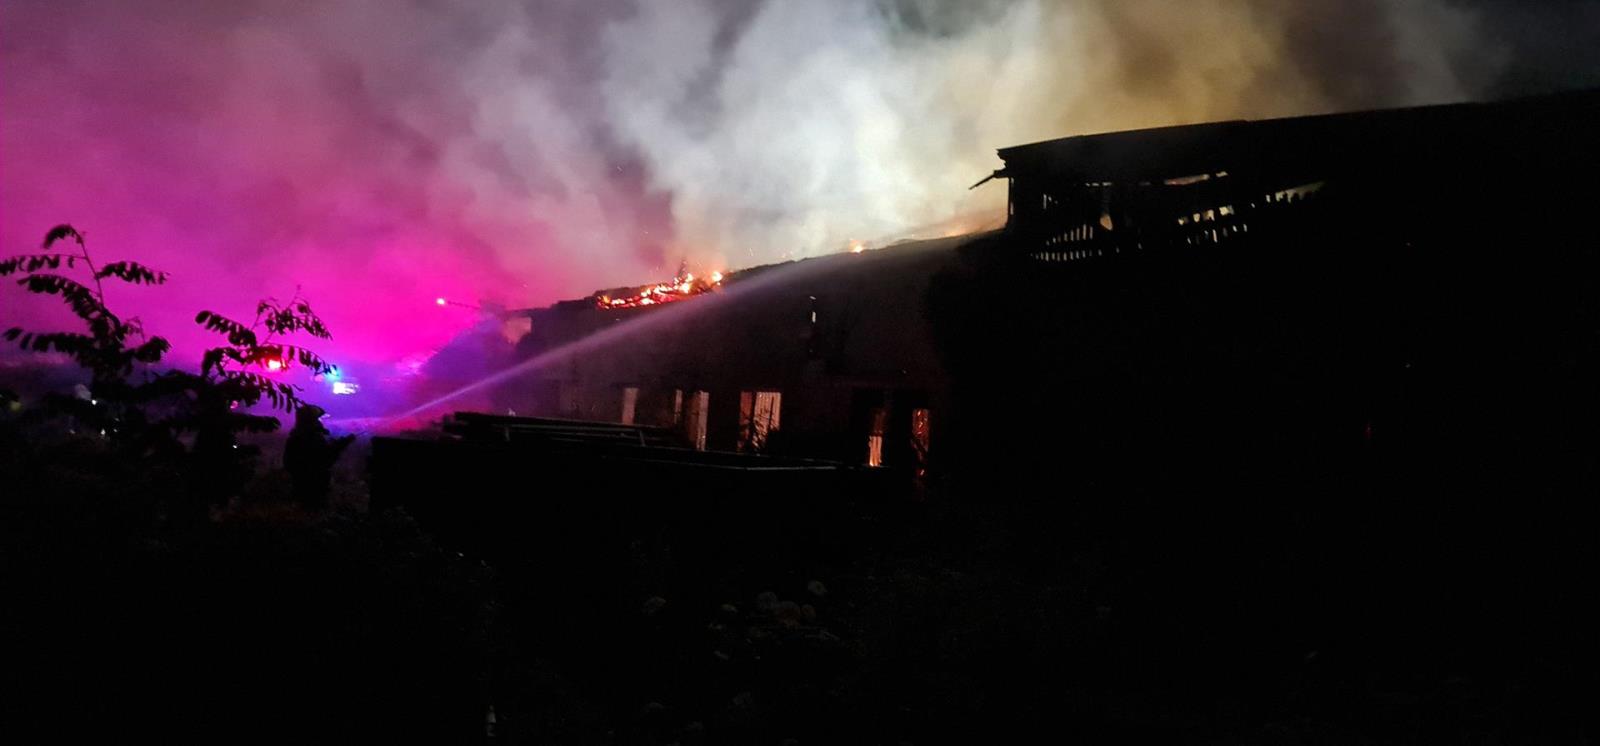 020-Požár ve výkupně kovového odpadu v bývalém areálu Poldi Kladno.jpg